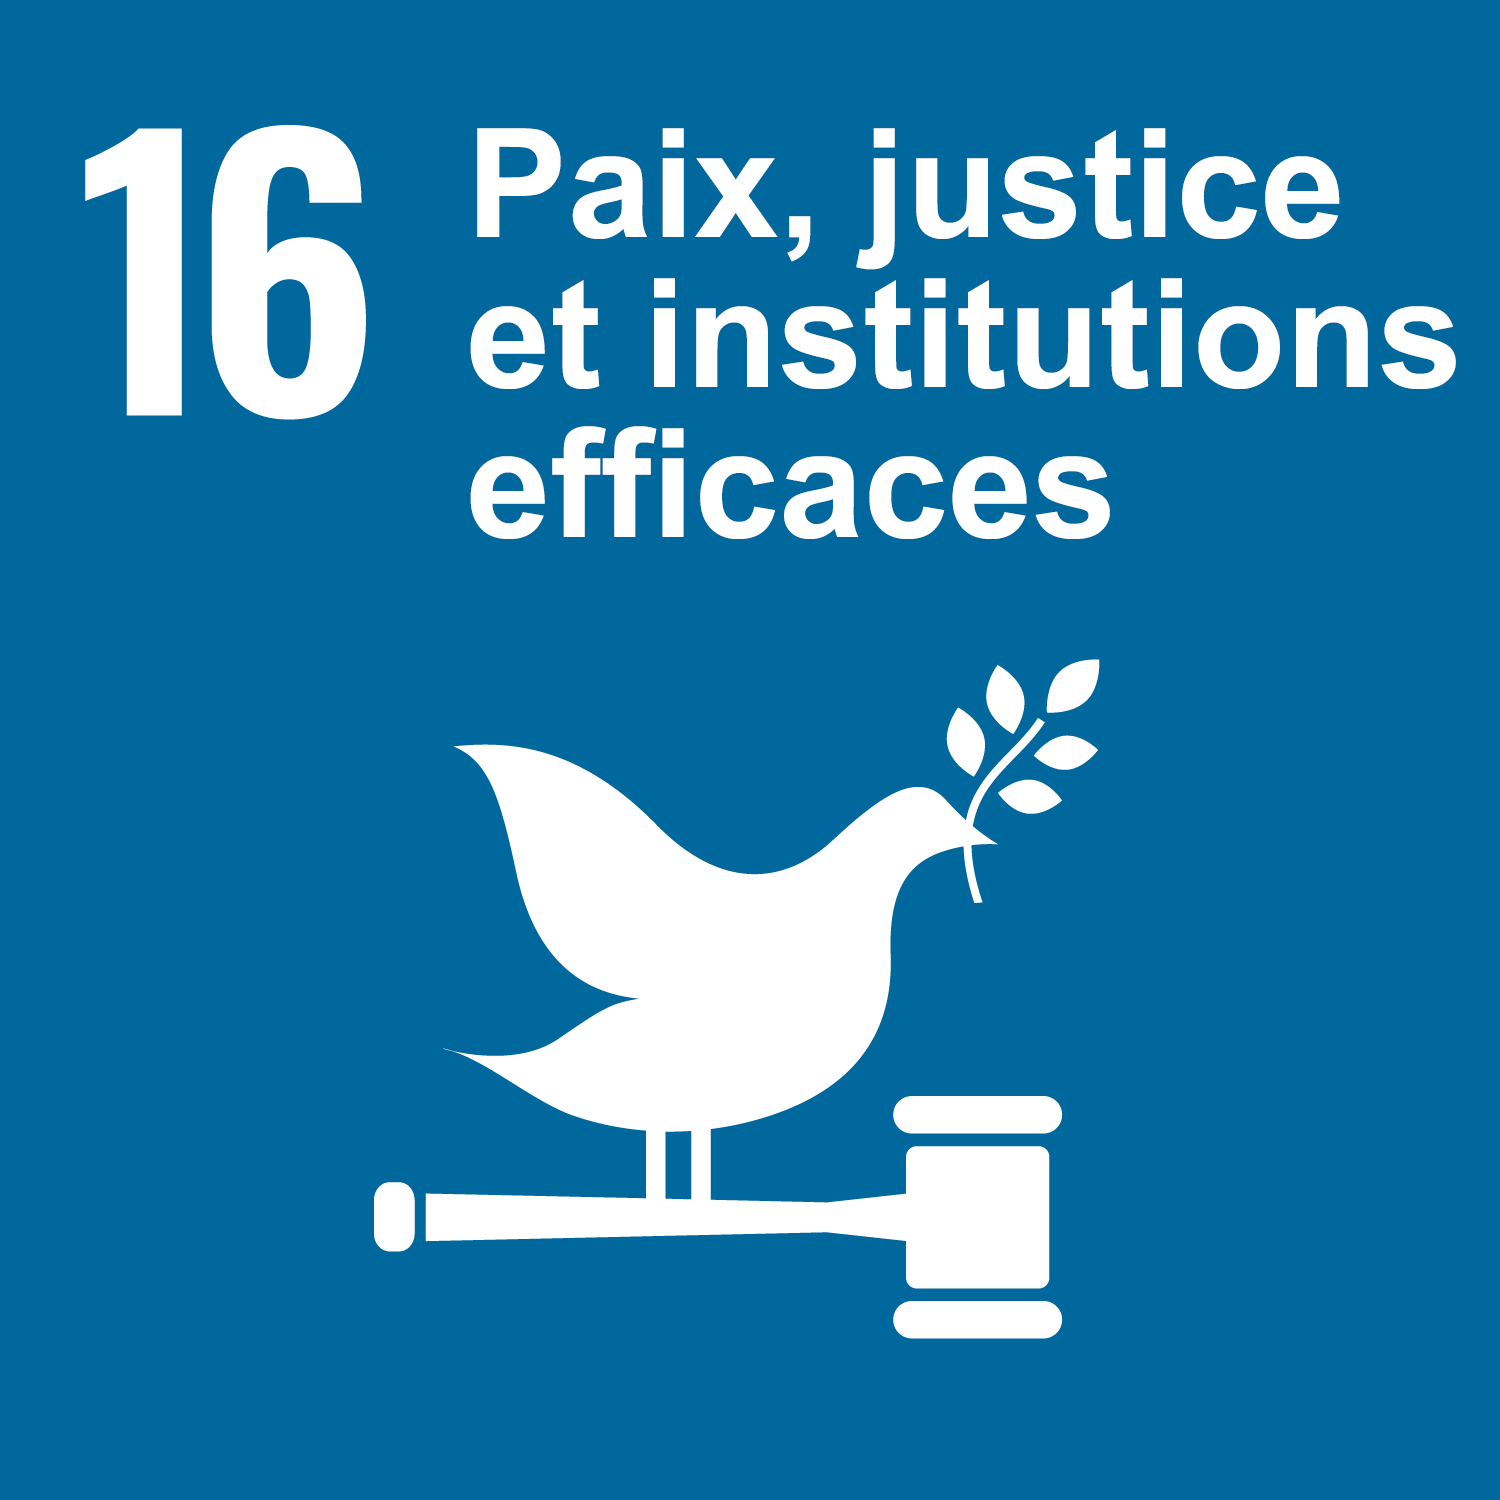 Objectif 16: Paix, justice et institutions efficaces